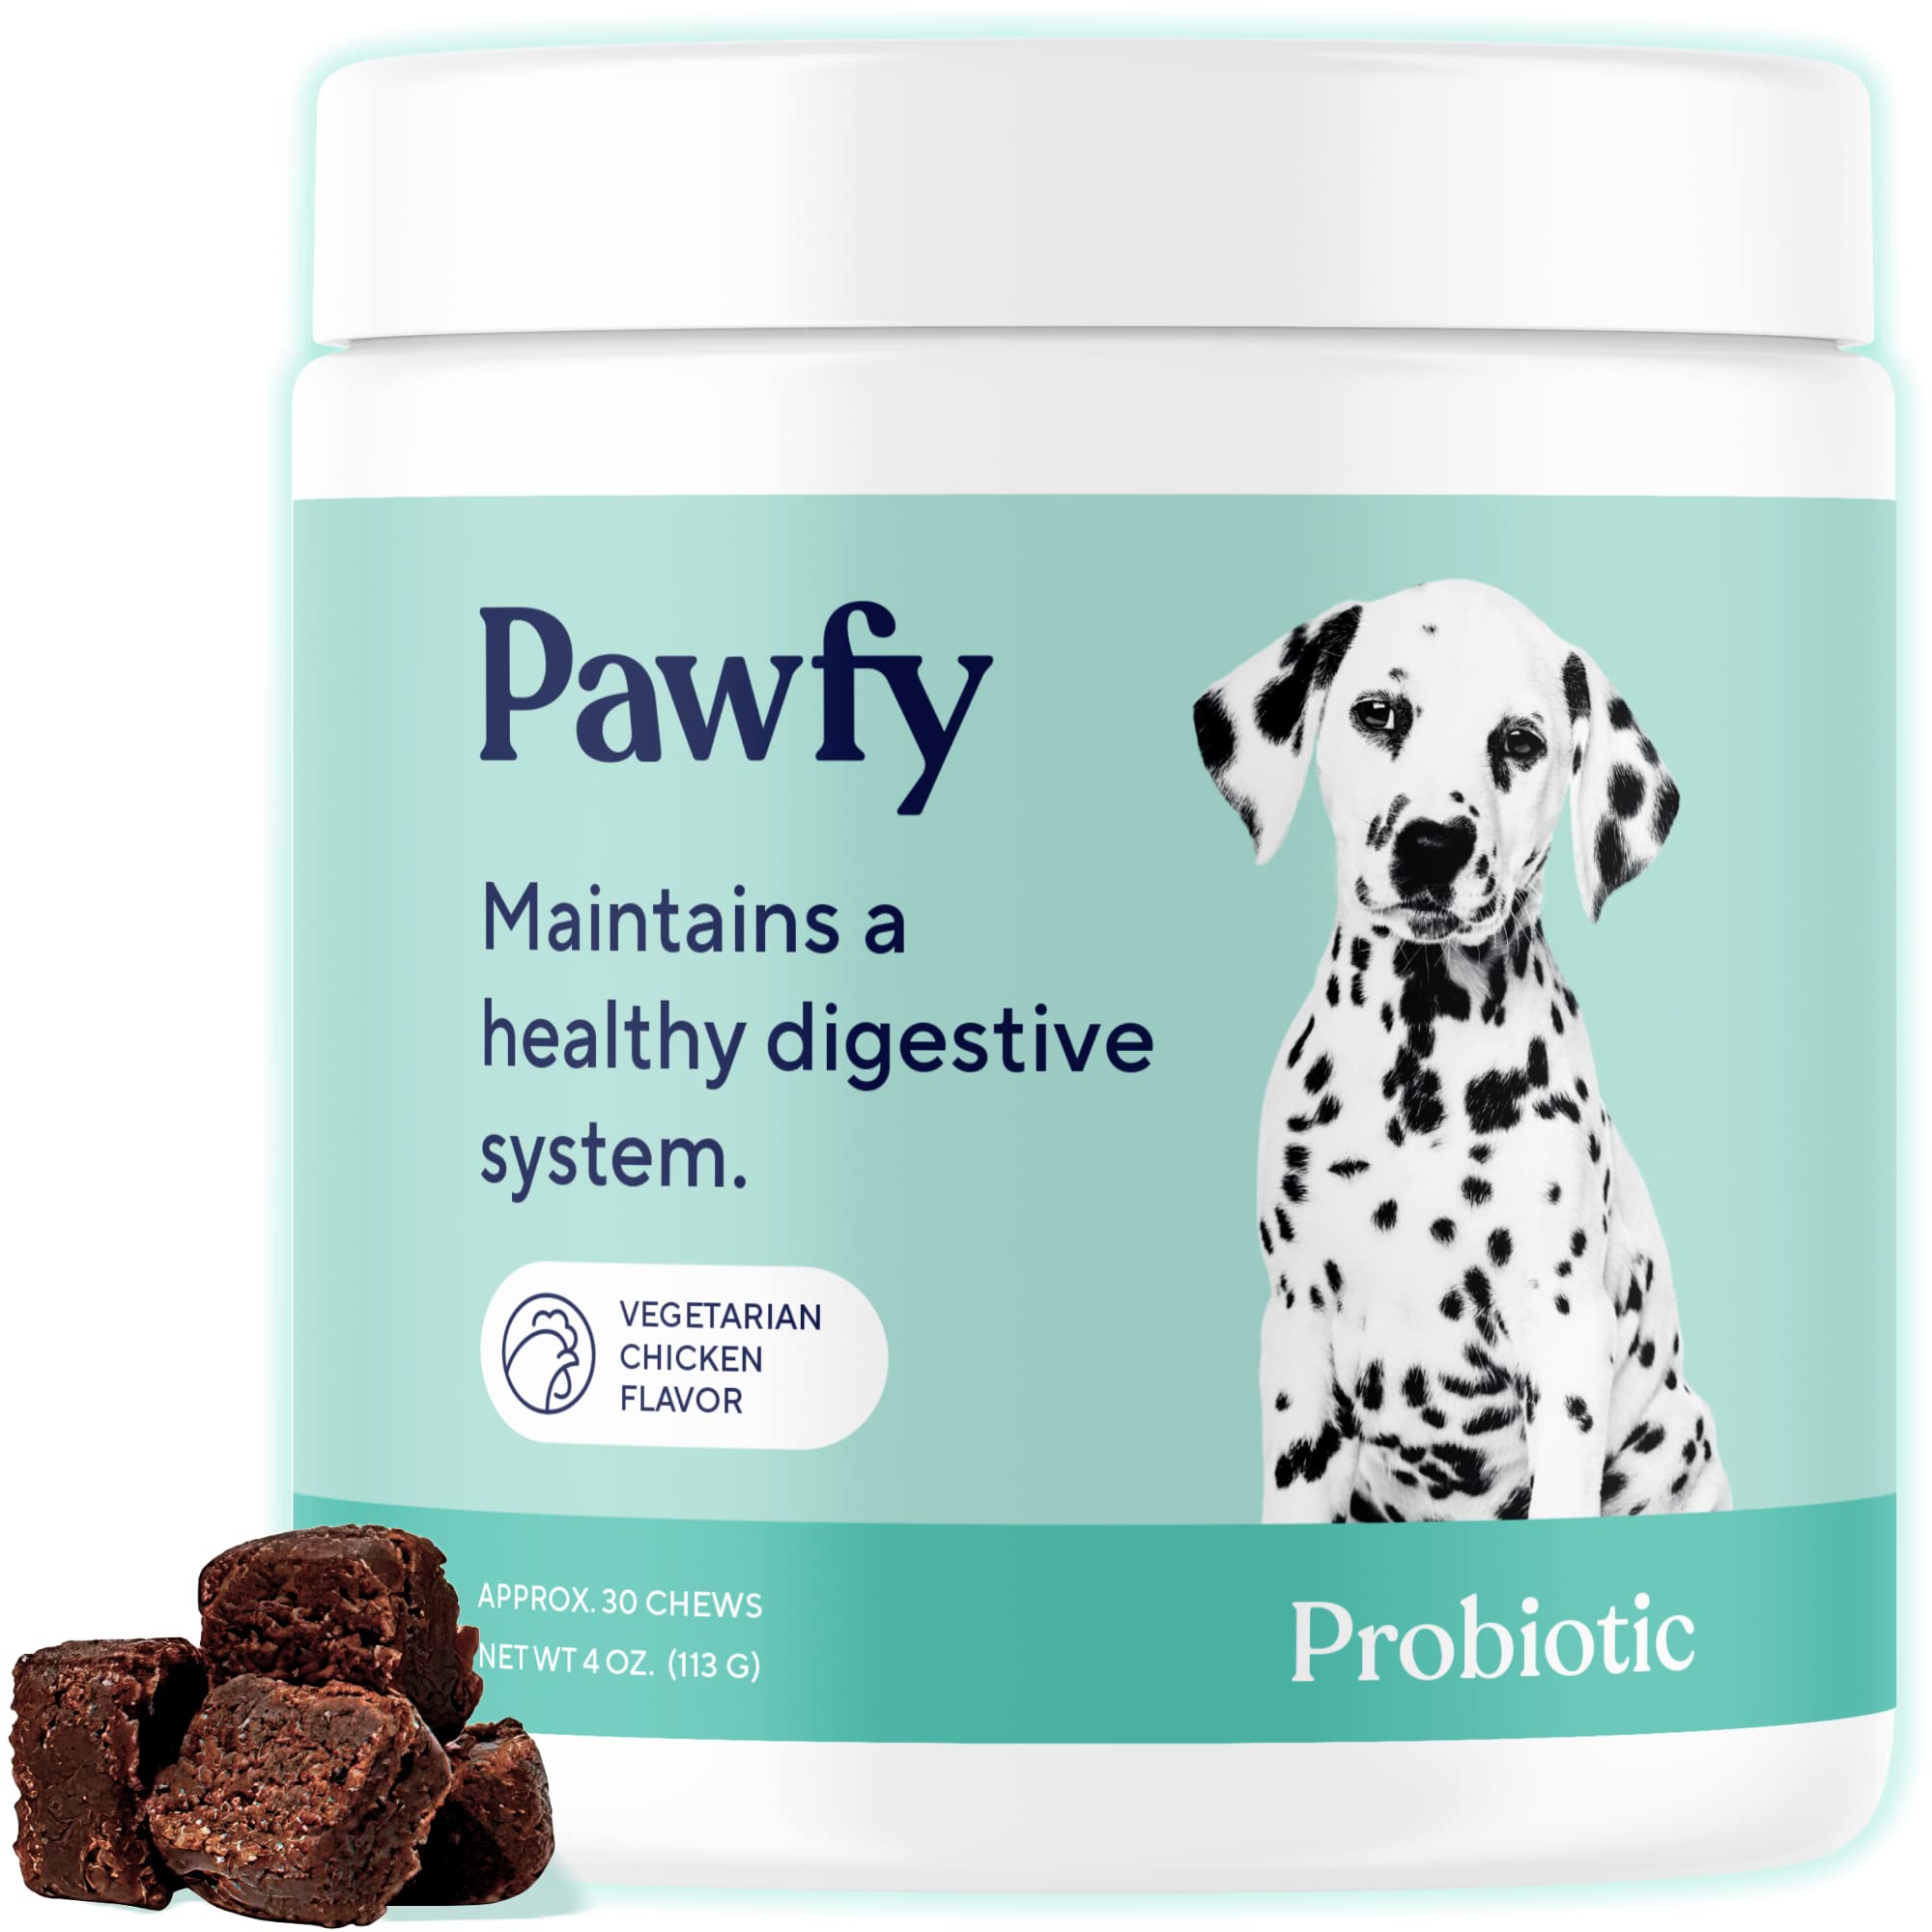 Pawfy Probiotic-3